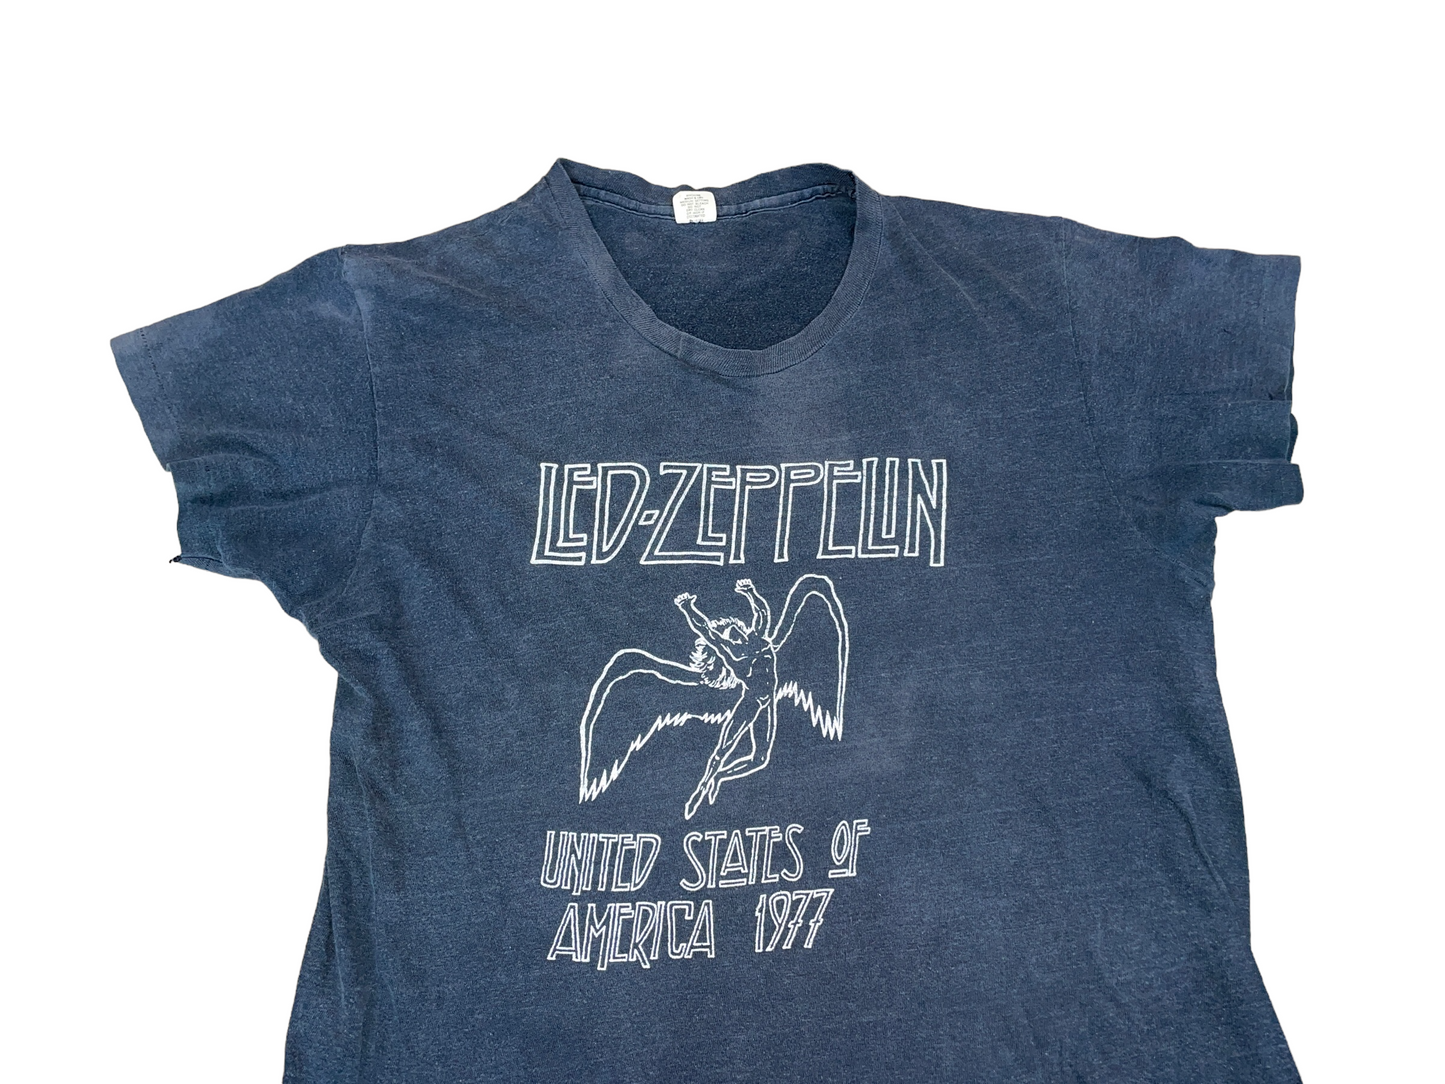 Vintage 1977 Led Zeppelin Tour T-Shirt